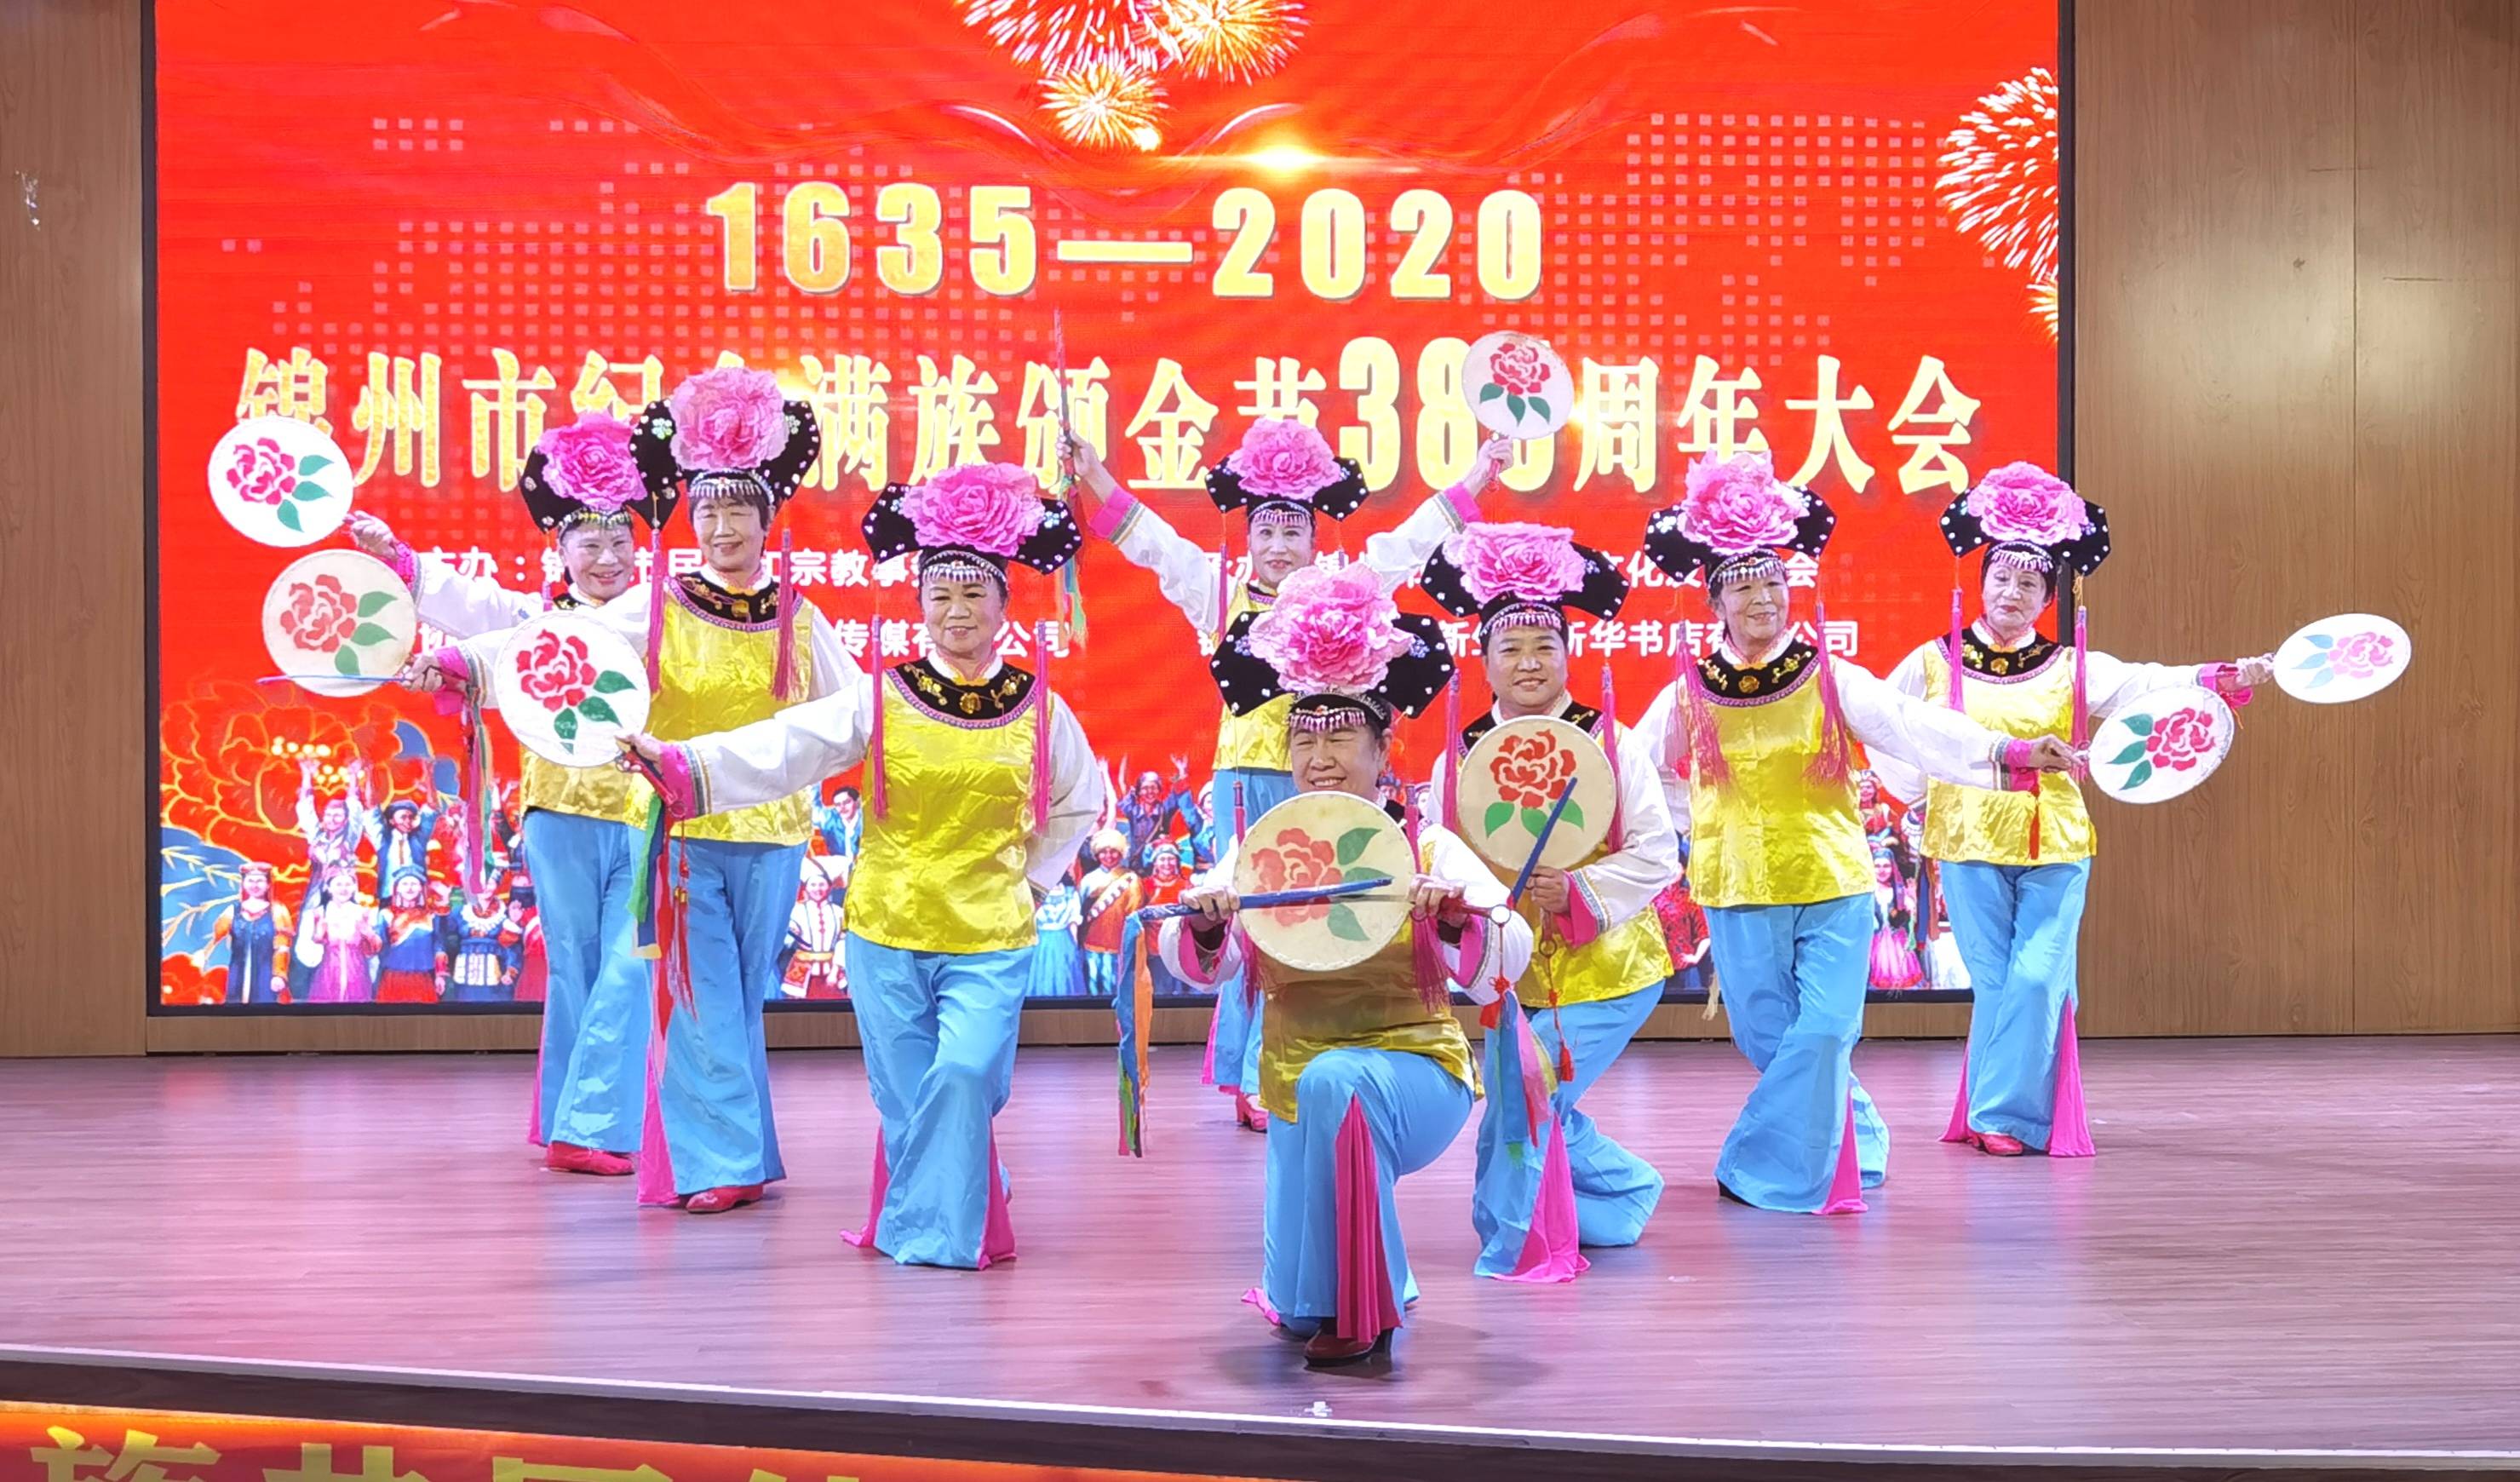 锦州市纪念满族颁金节385周年大会盛大举行!